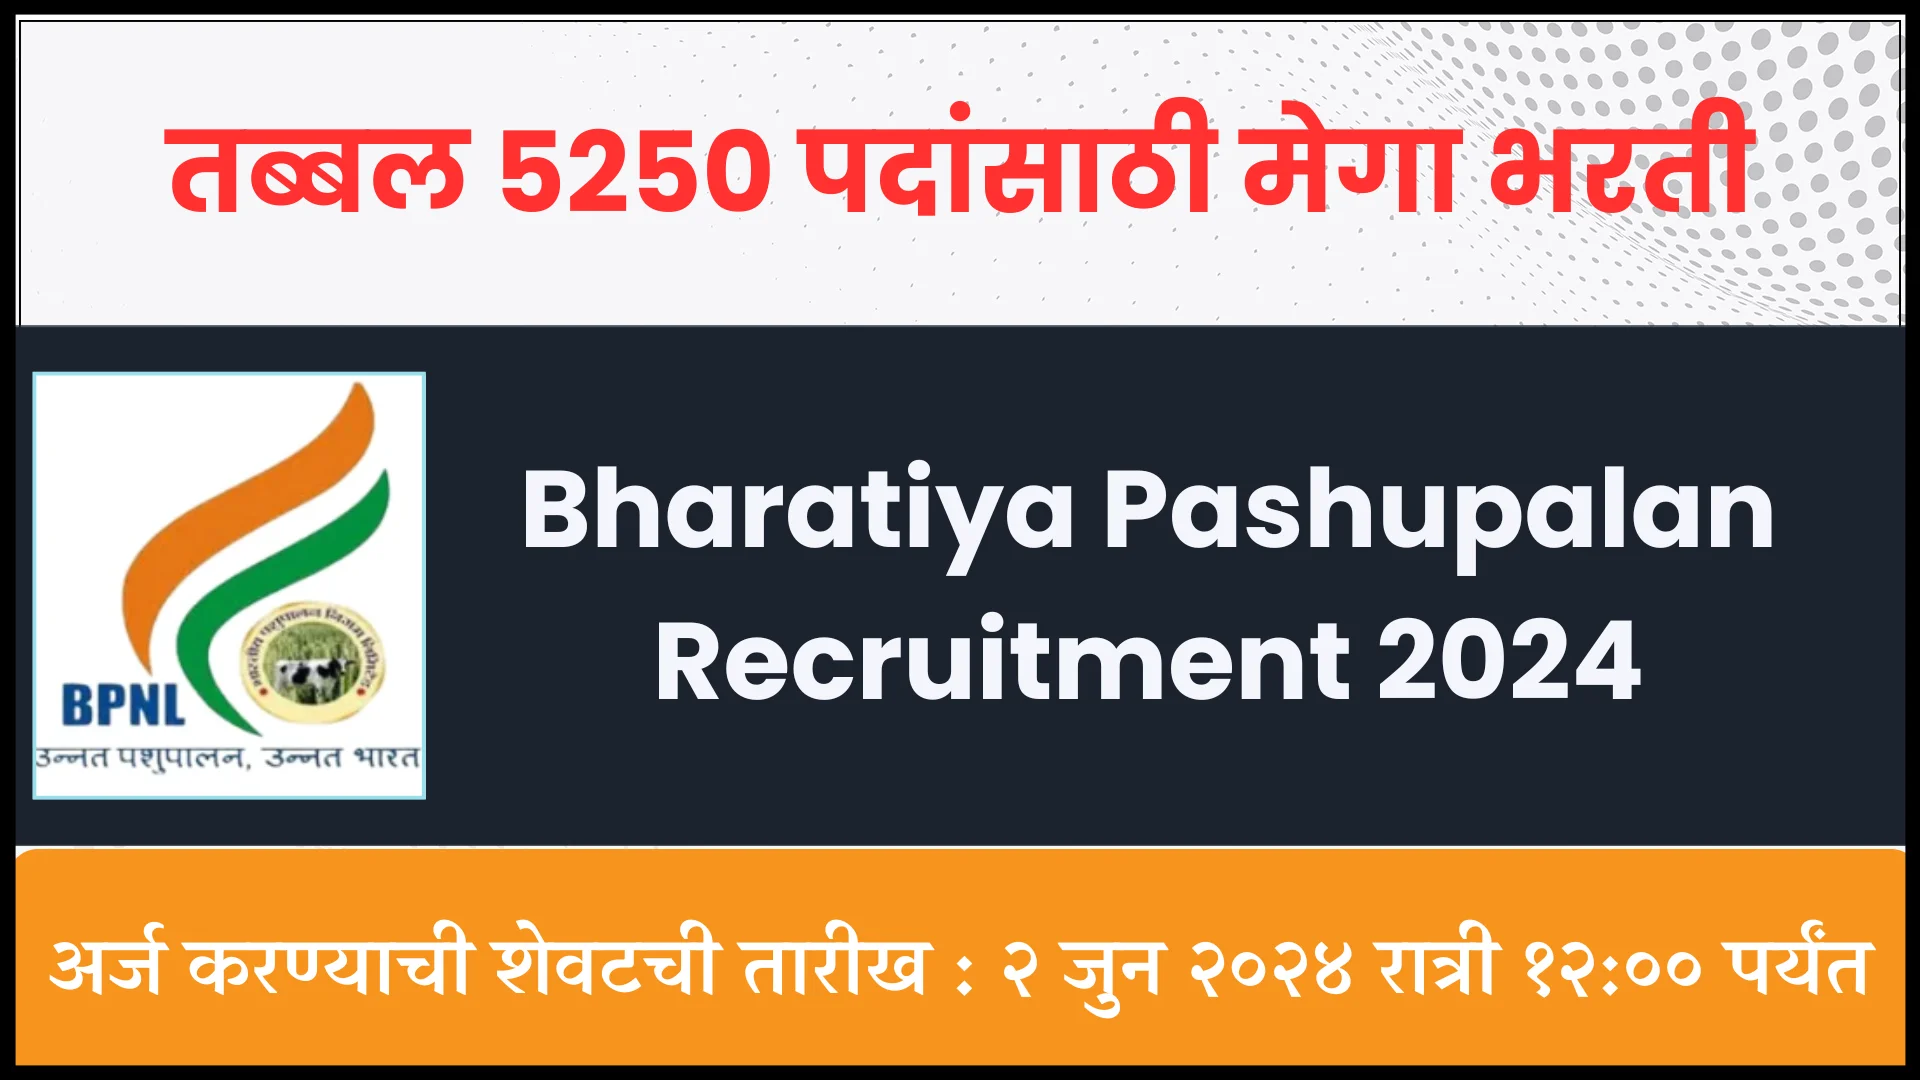 Bhartiya Pashupalan Recruitment